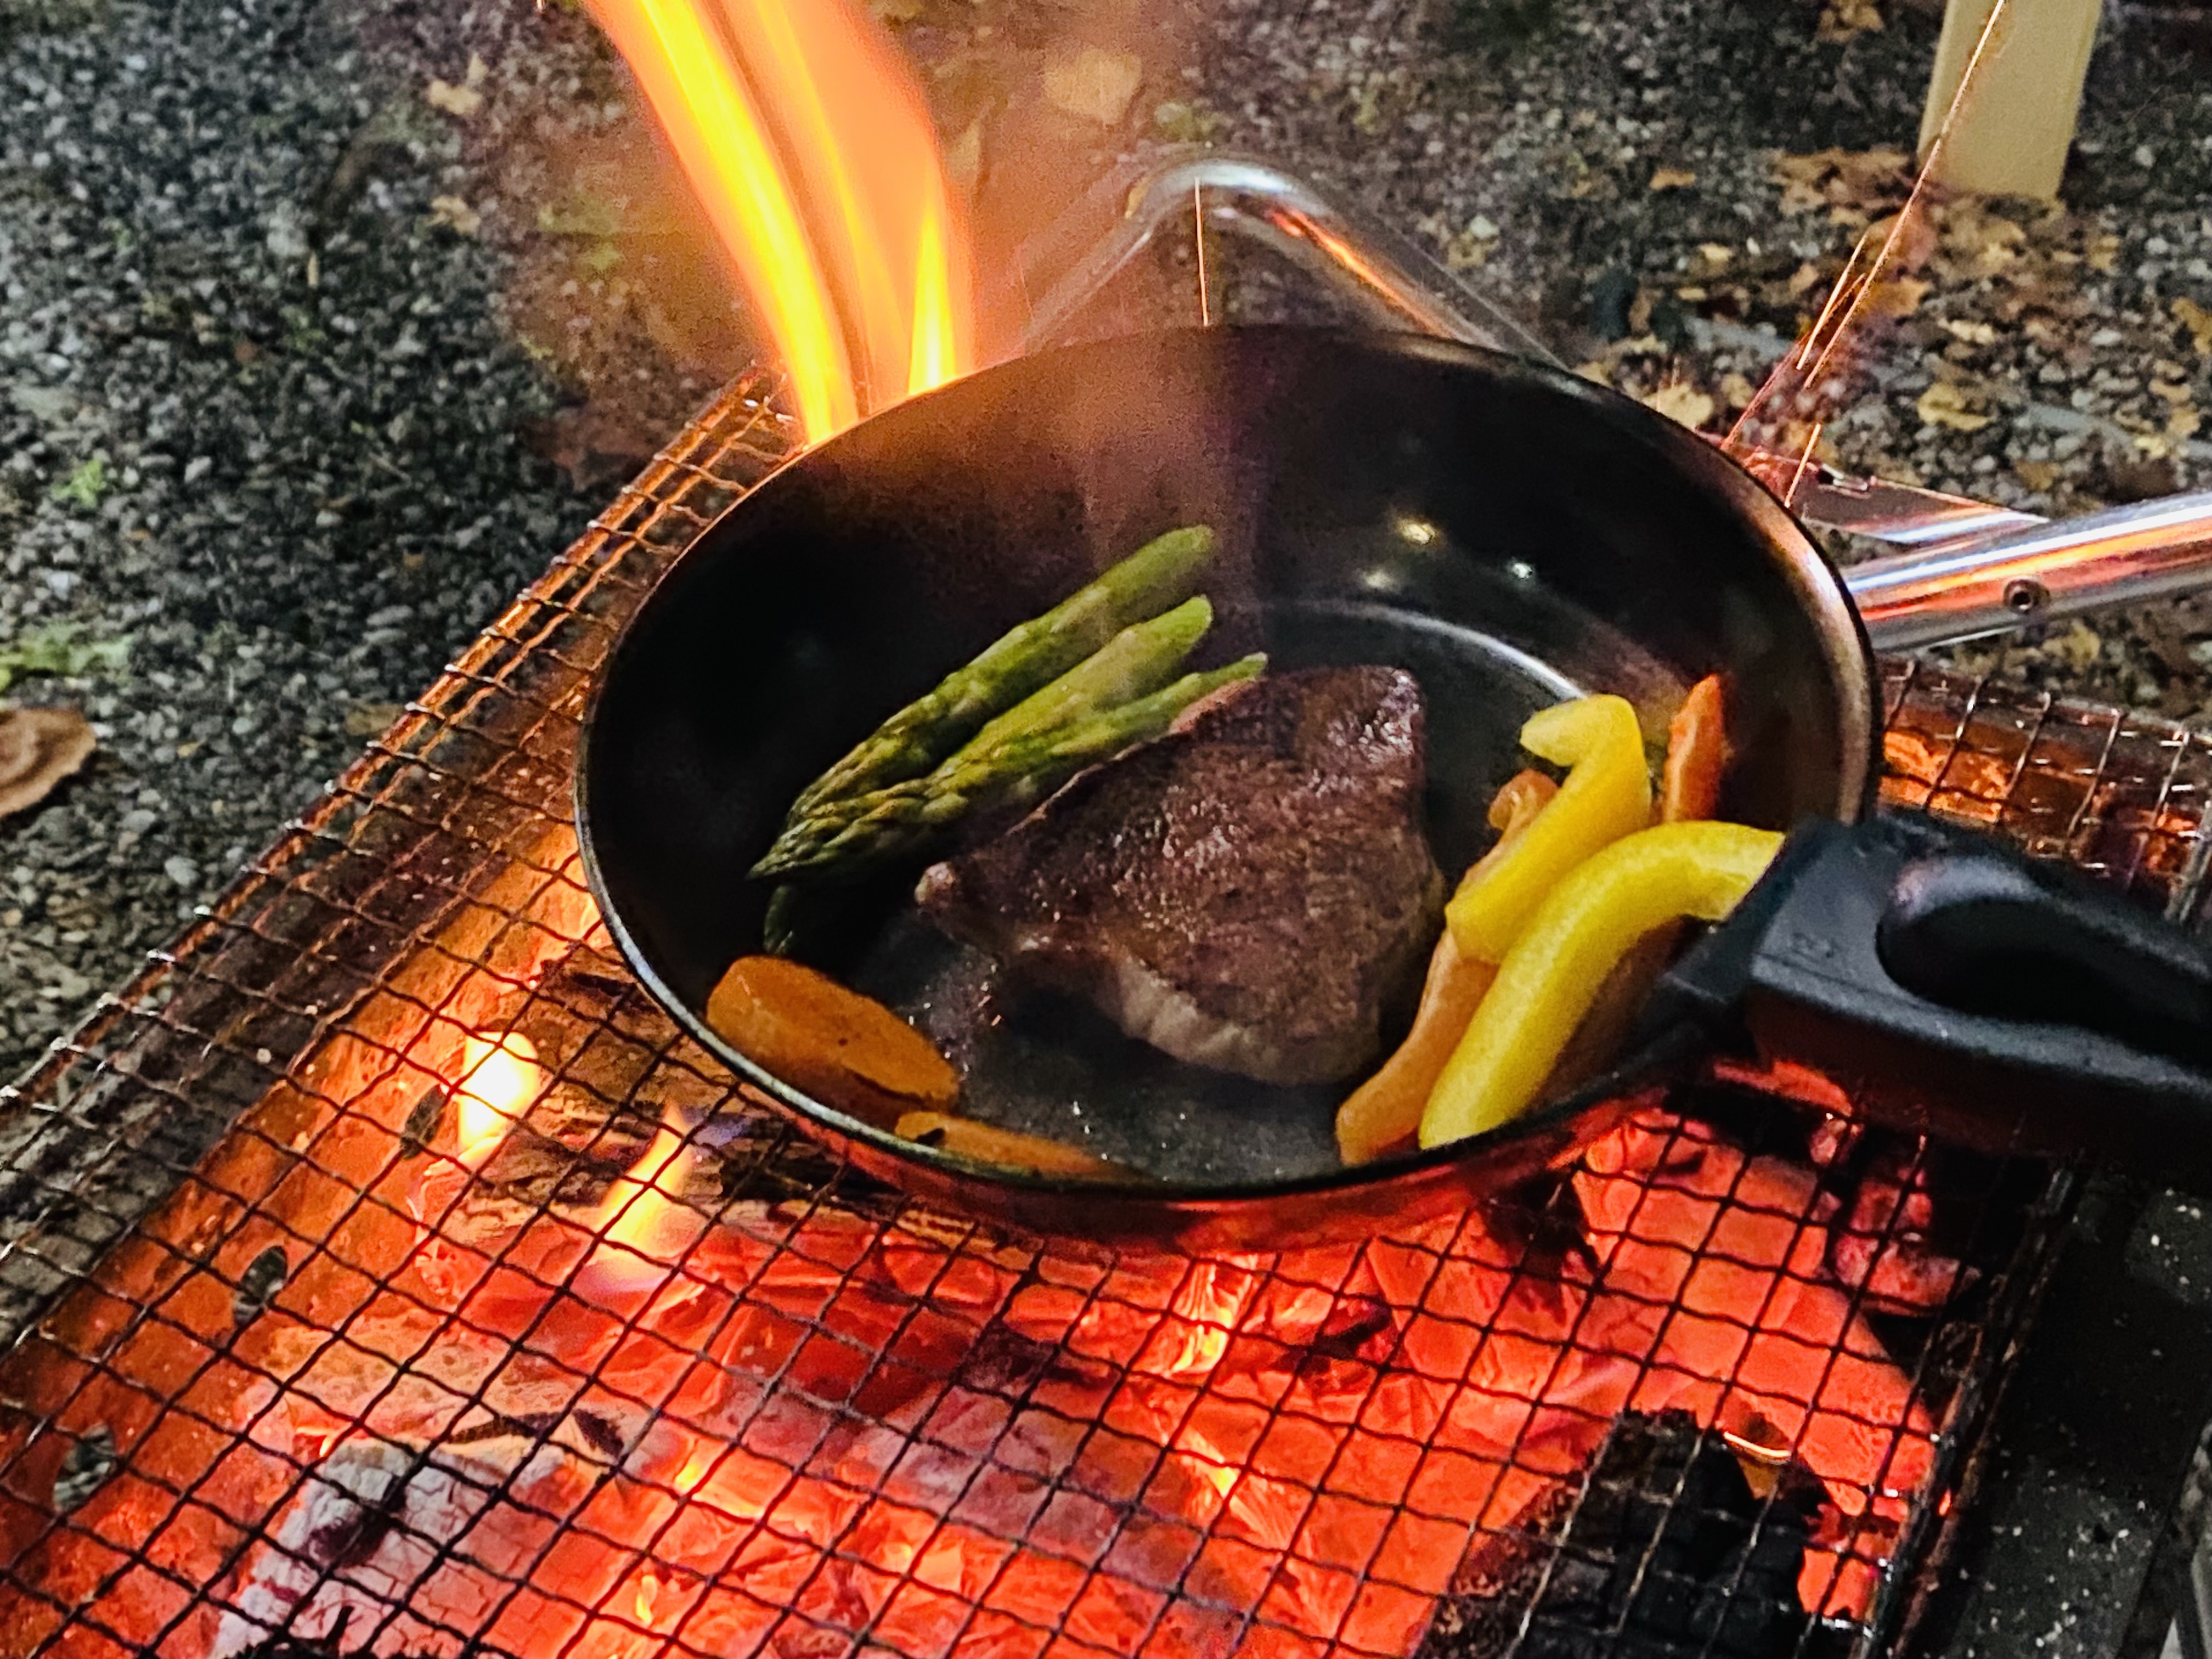 ソロキャンプを楽しむフライパン“ソロパン”　
お肉も一気に焼ける分厚さなのに取っ手が取れてコンパクトに！
Makuakeで2月26日(日)まで販売